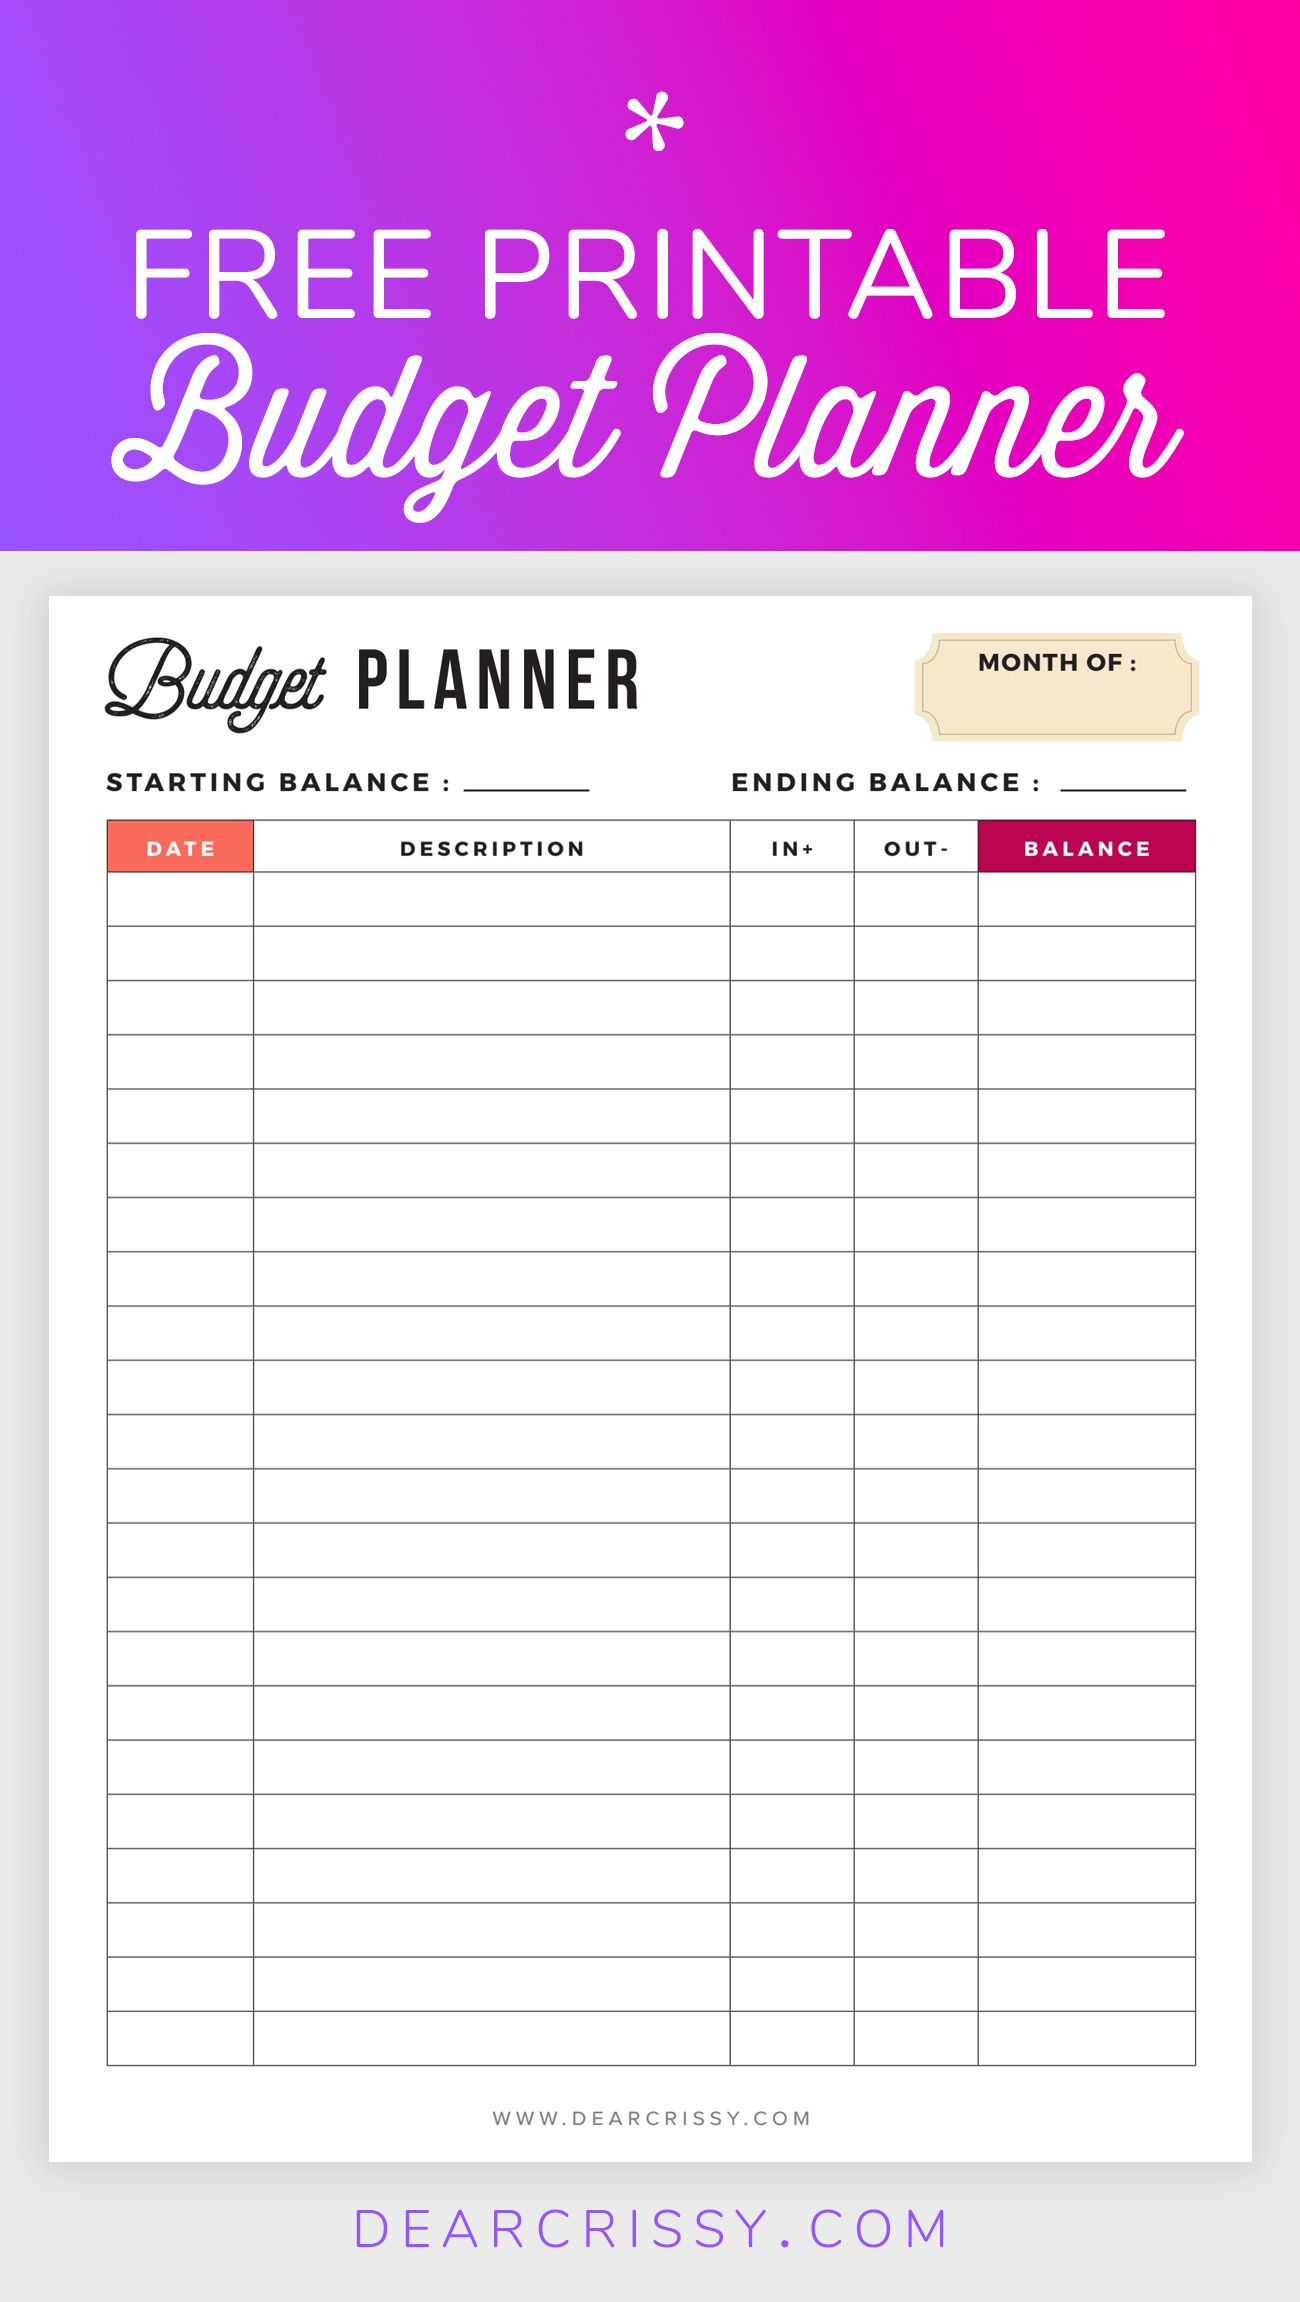 Free Budget Planner Printable - Printable Finance Planner | Home - Free Printable Financial Planner 2017